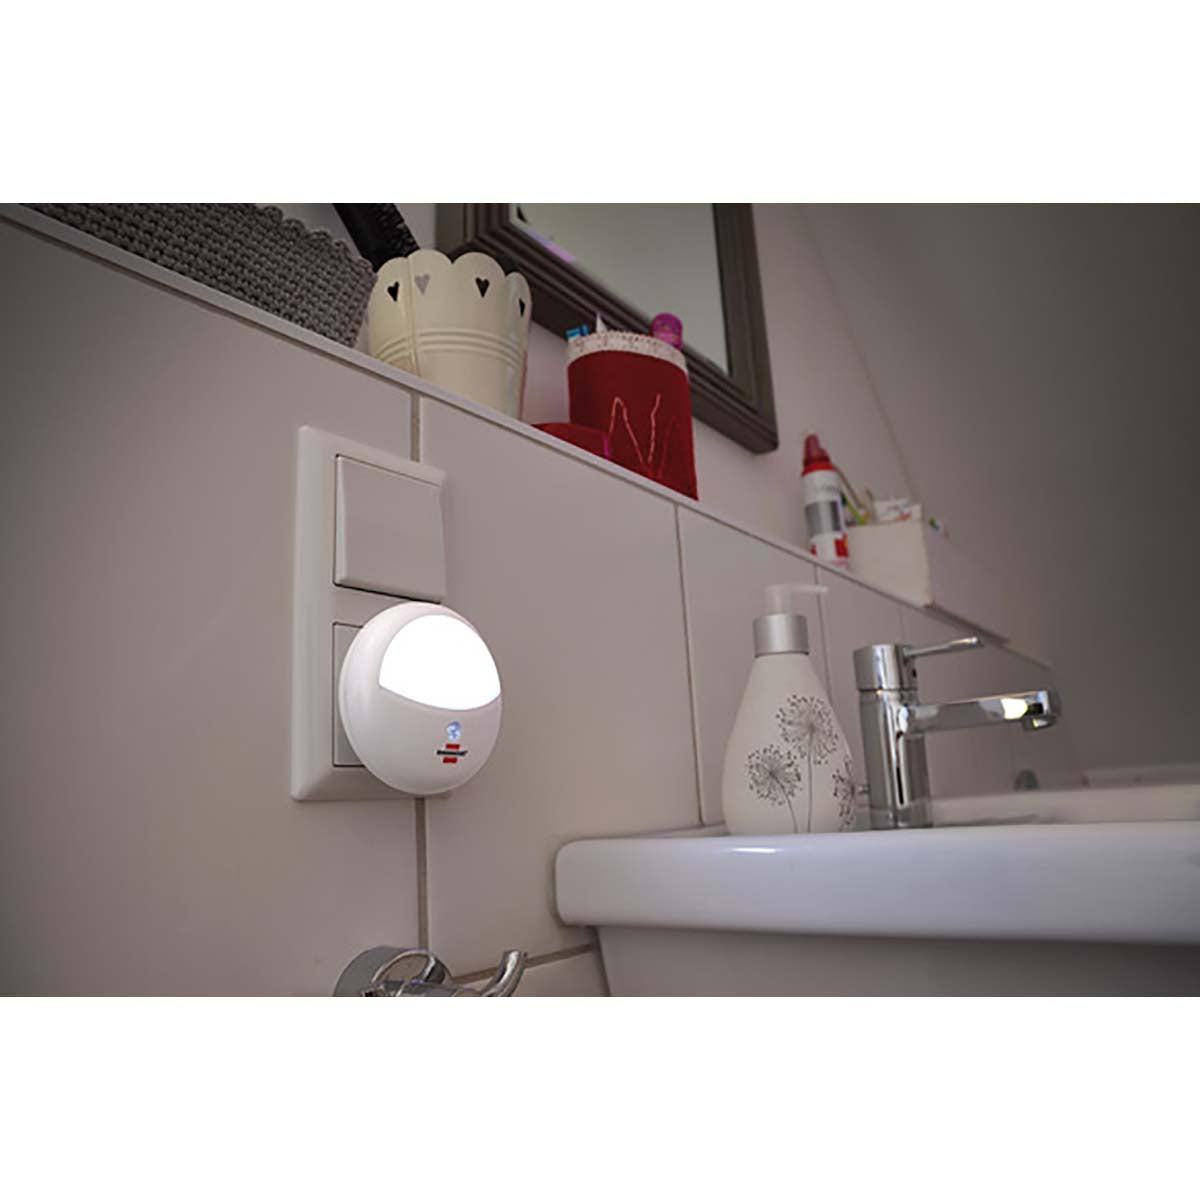 LED-Orientierungslicht rund / Nachtlicht mit Dämmungssensor für die Steckdose (sanftes und unaufdringliches Licht, mit 2 LEDs) weiß